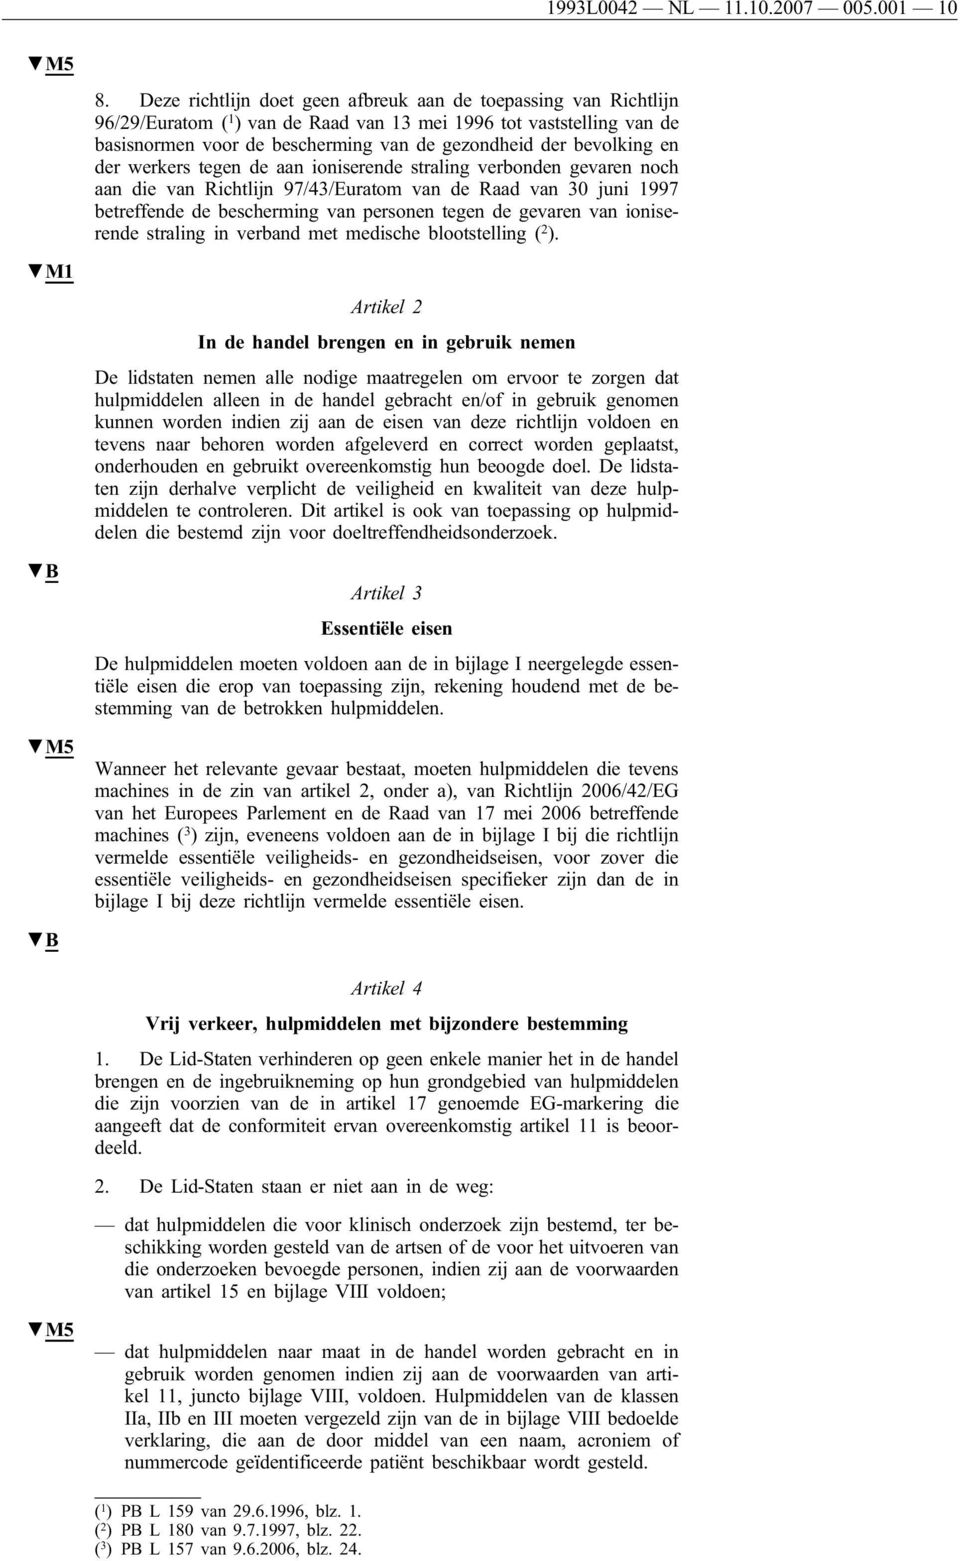 bevolking en der werkers tegen de aan ioniserende straling verbonden gevaren noch aan die van Richtlijn 97/43/Euratom van de Raad van 30 juni 1997 betreffende de bescherming van personen tegen de